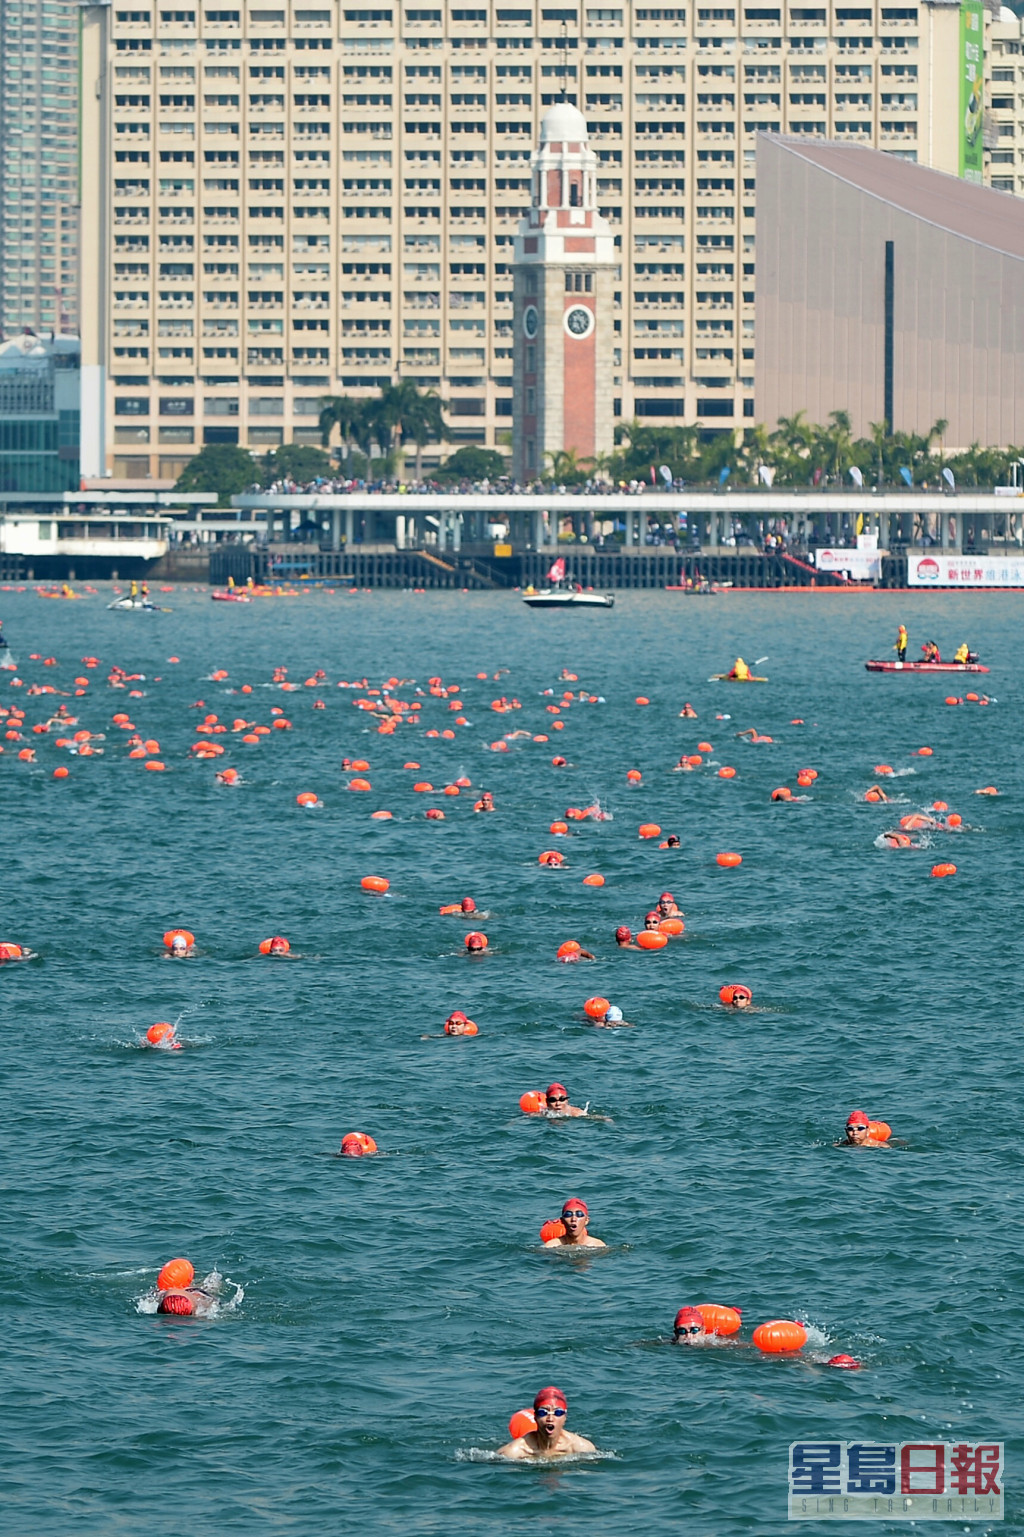 「維港渡海泳」本周日(10月23日)舉行。資料圖片